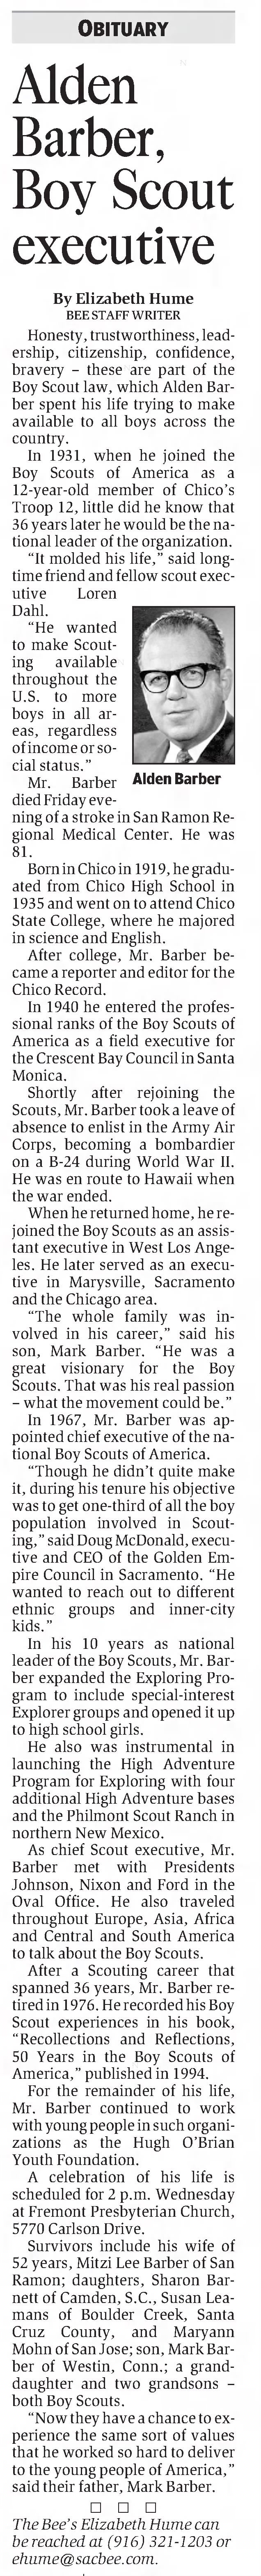 Alden Barber, Boy Scout executive; 21 Jan 2003; The Sacramento Bee; B4